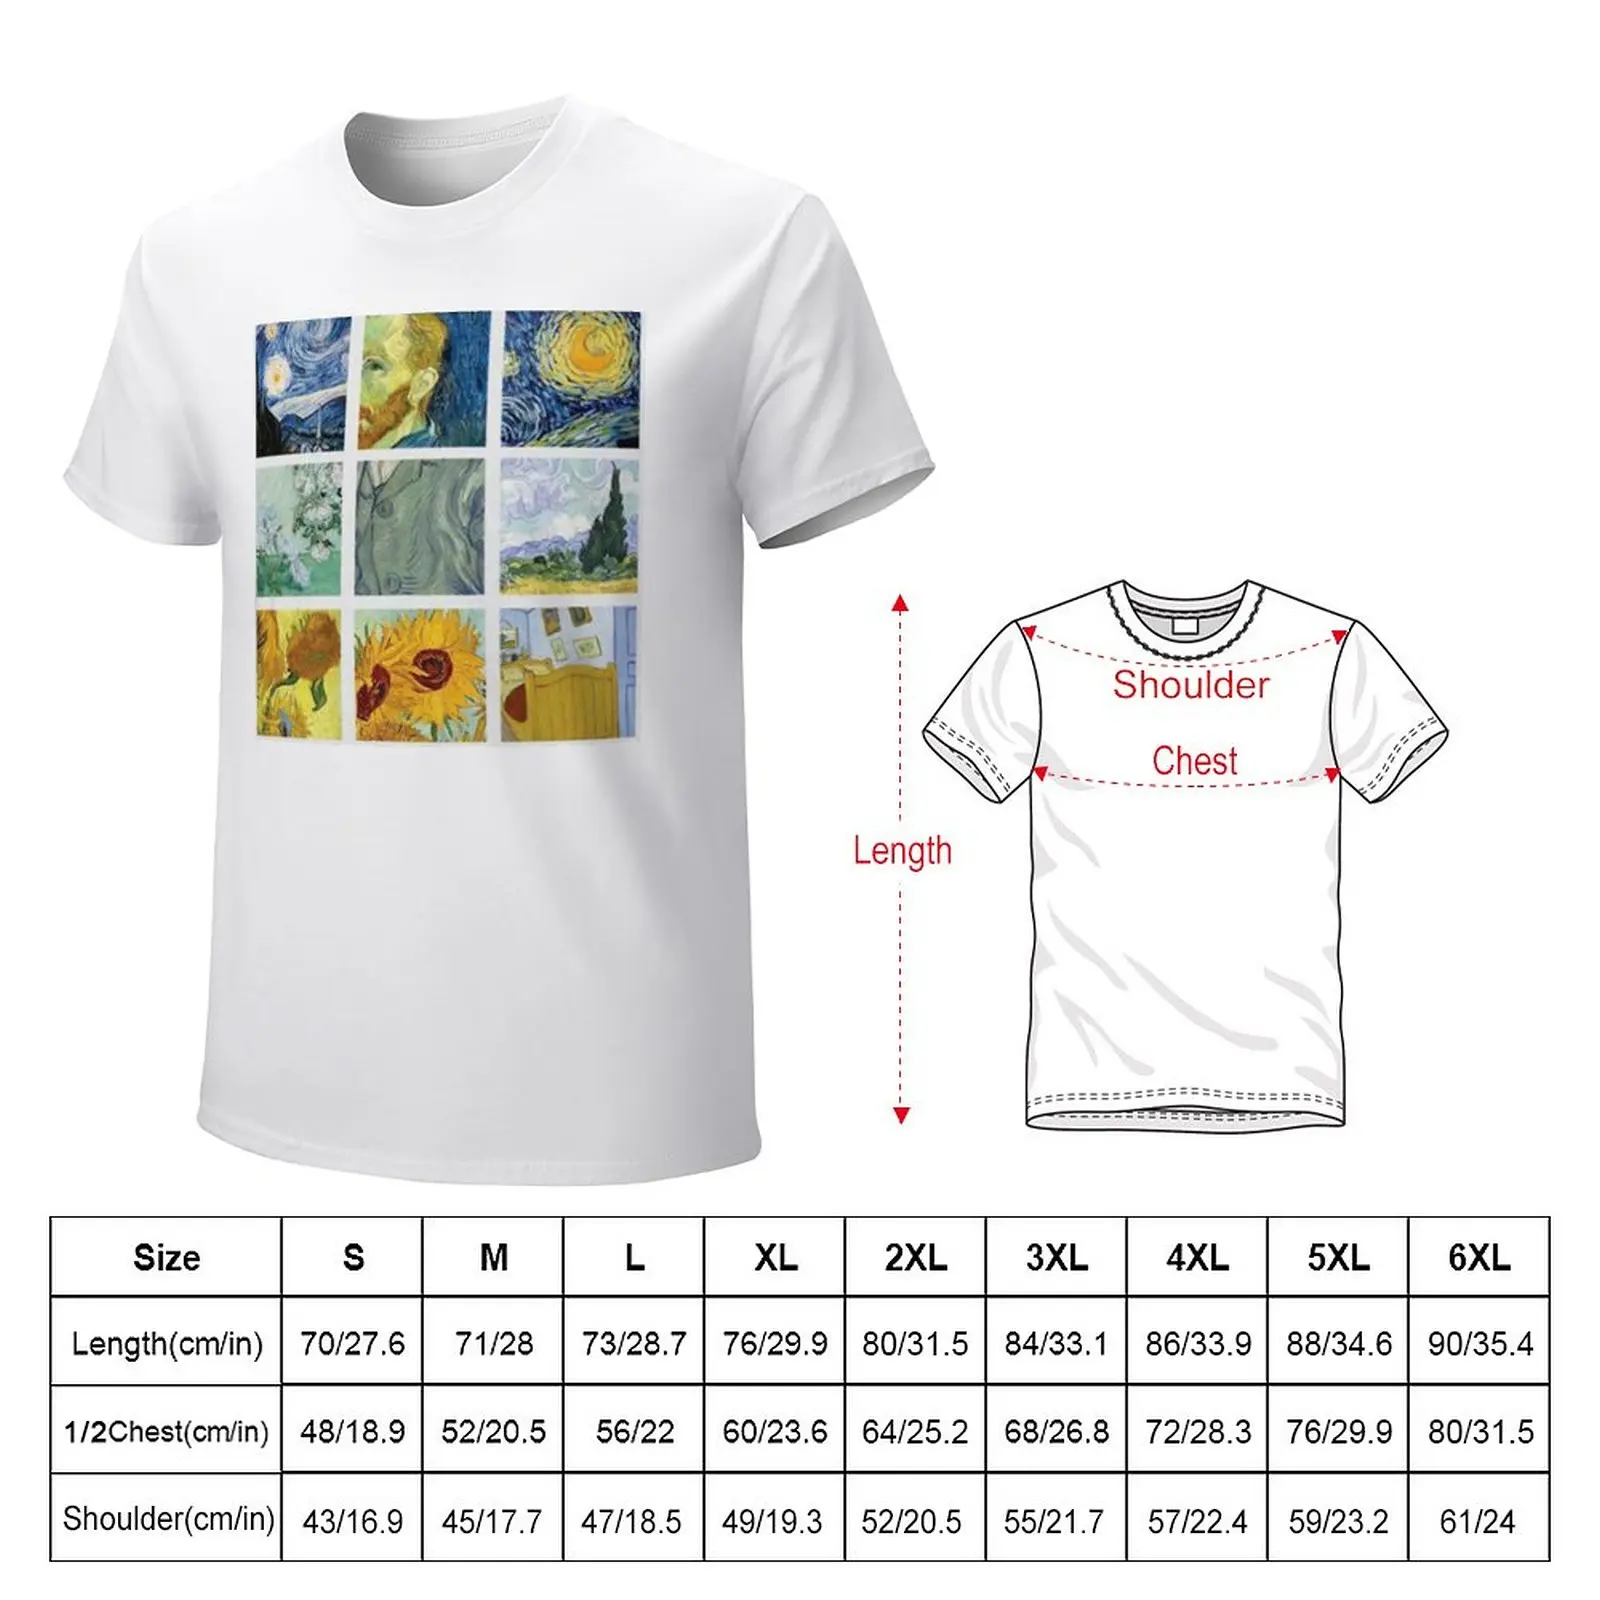 Футболка с рисунком Винсента Ван Гога в сетку, забавная футболка, корейская мода, мужские футболки большого и высокого роста Изображение 3